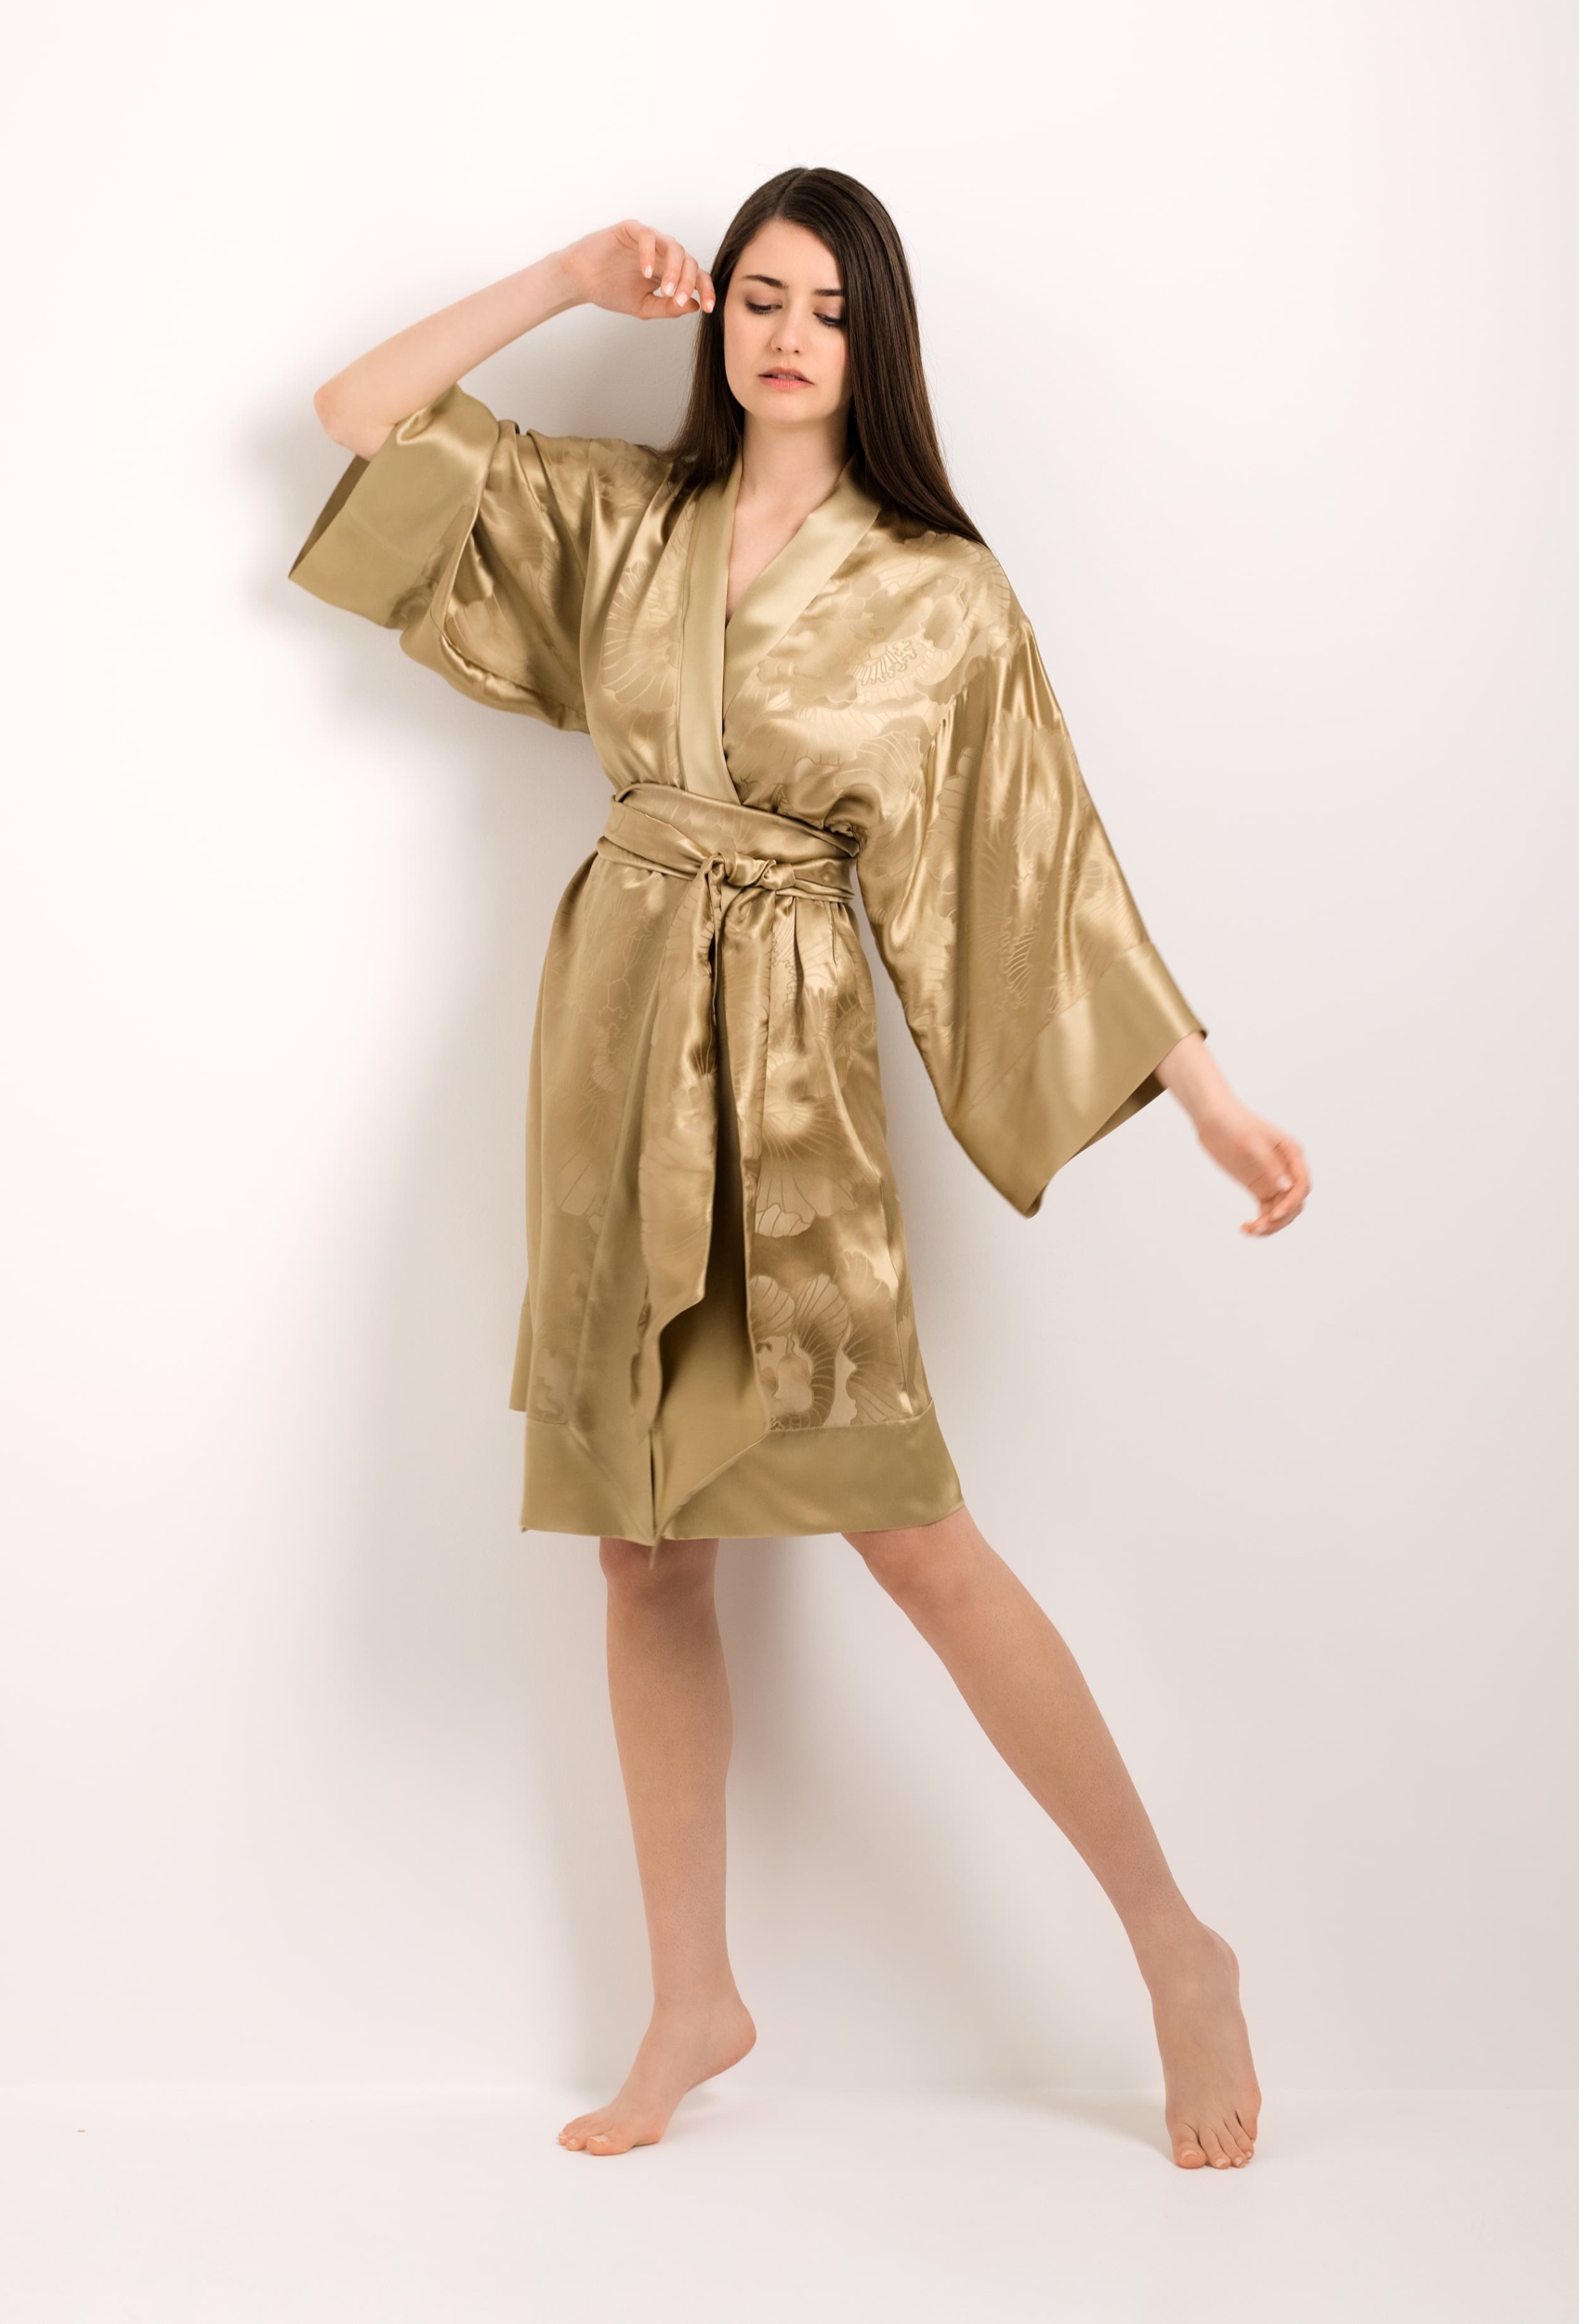 Jacquard silk kimono - gold peony - Carine Gilson